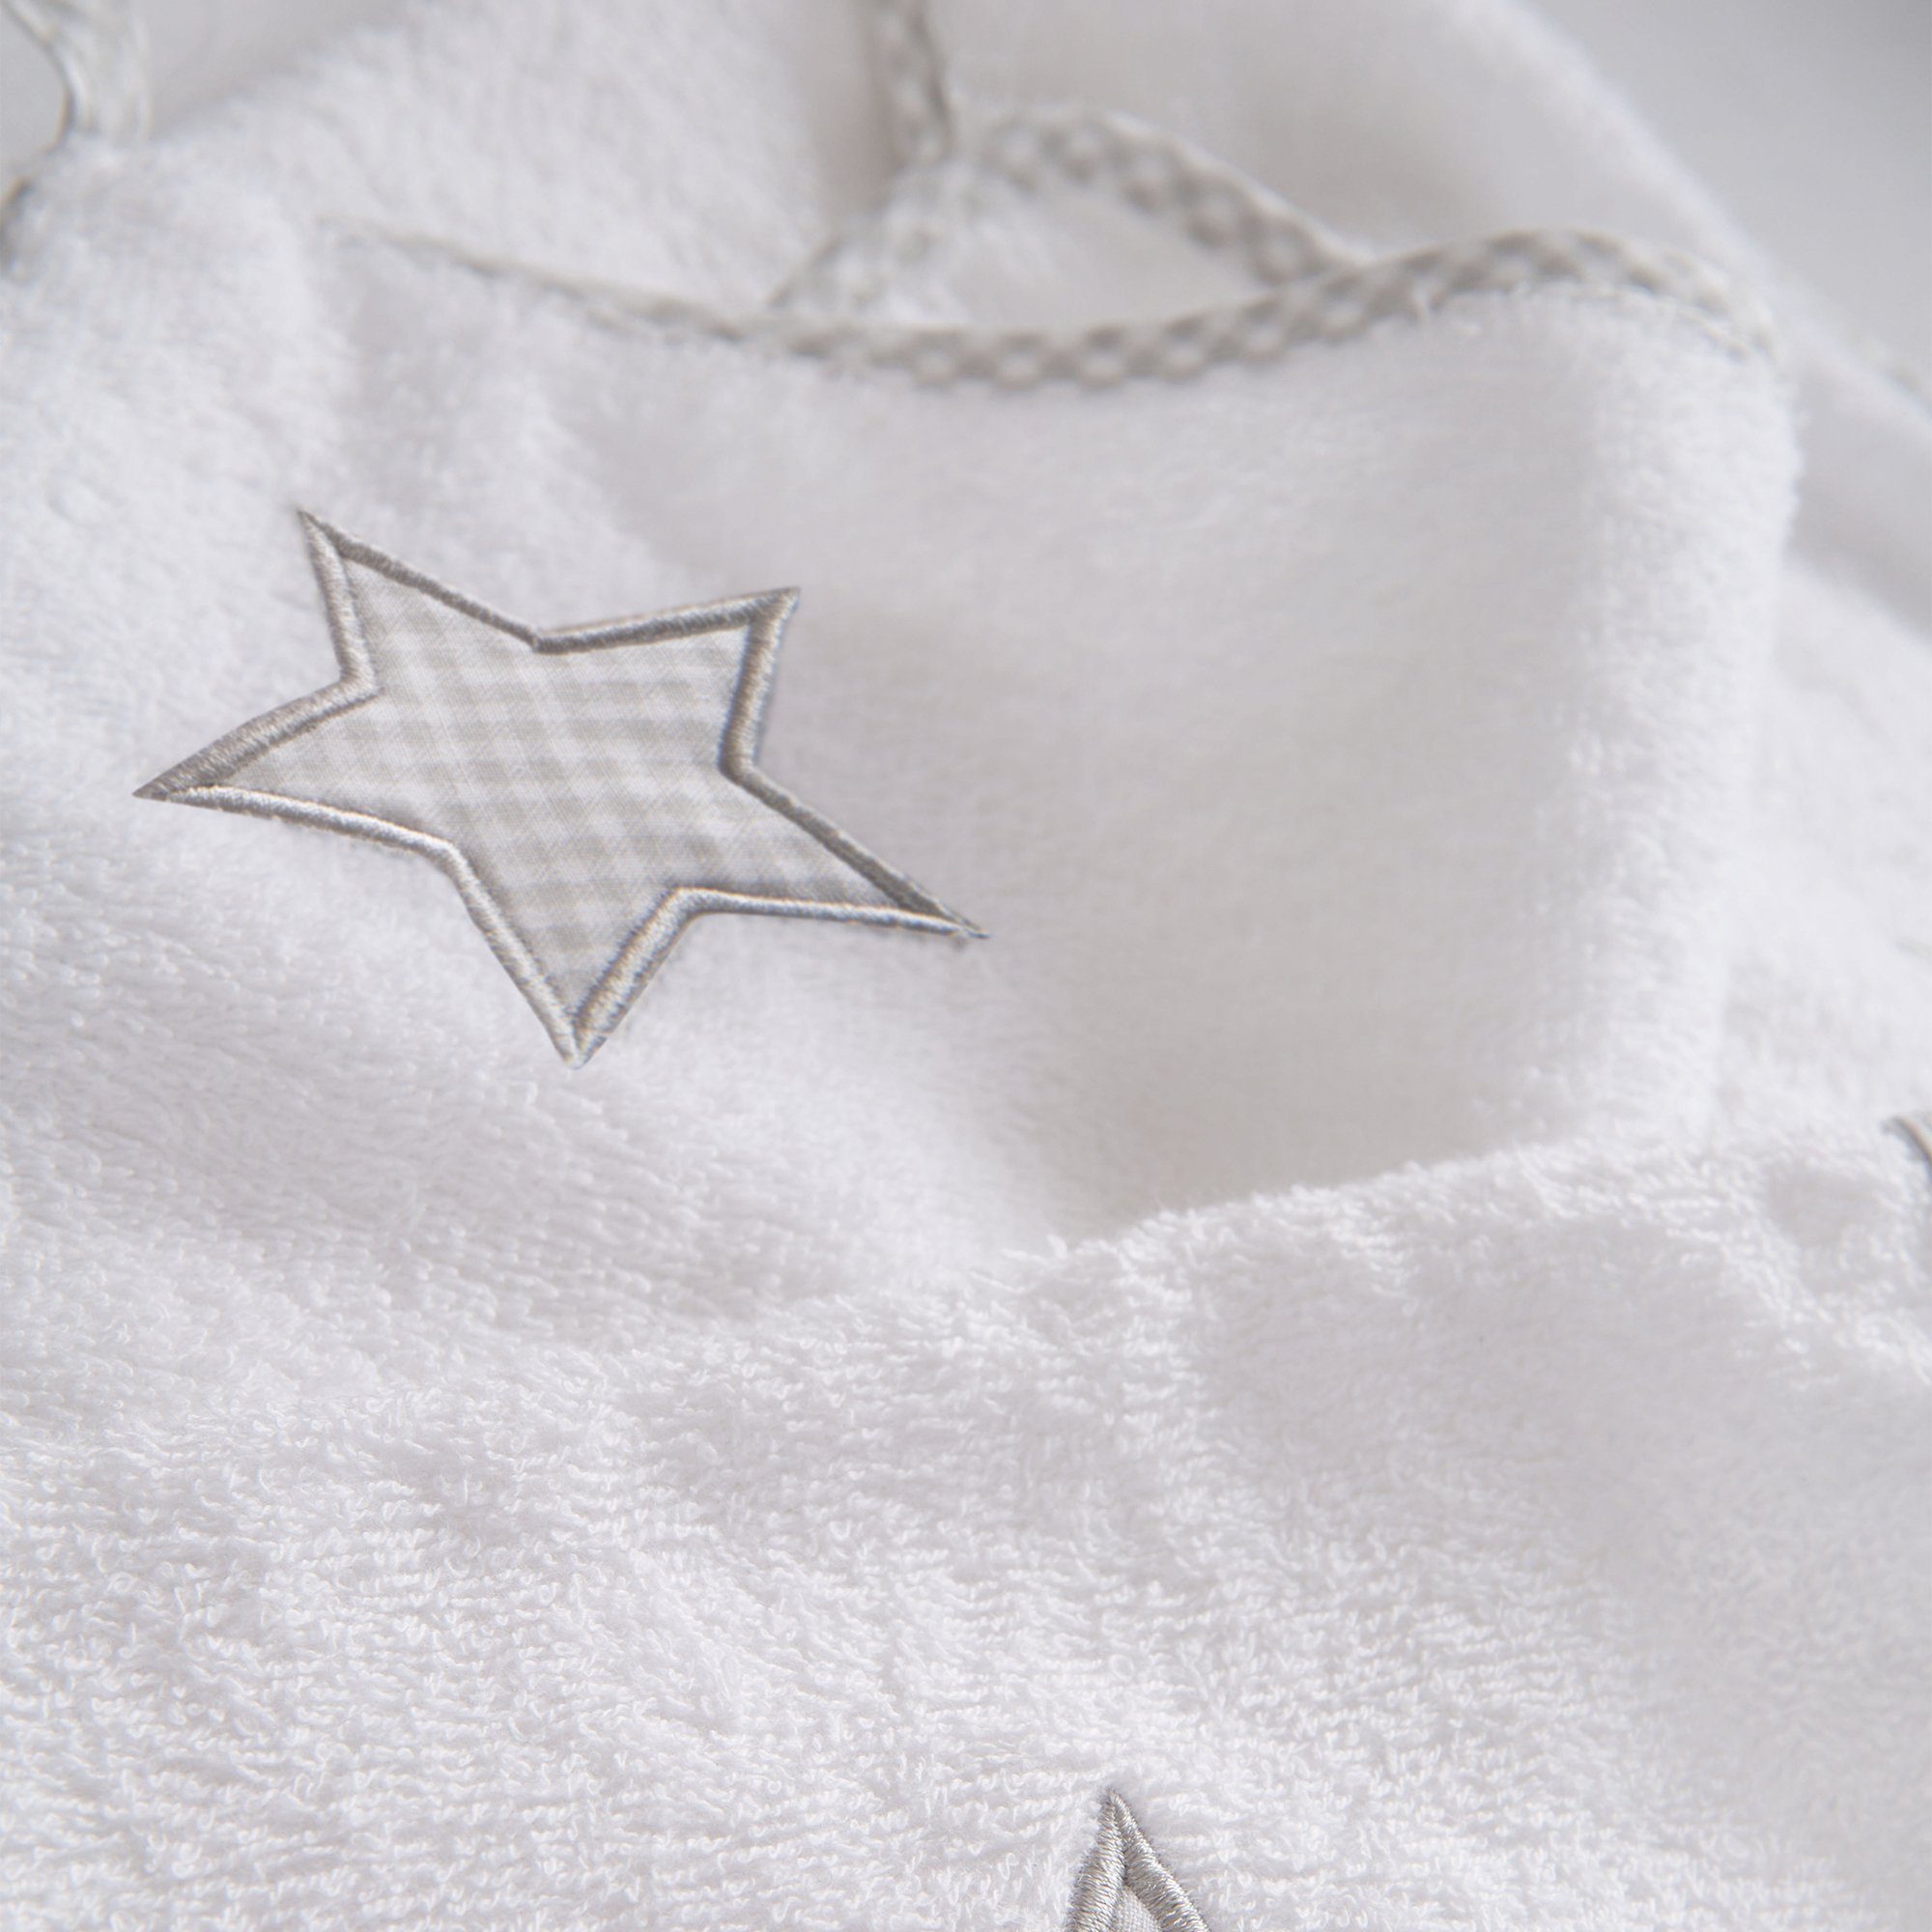 Handtuch roba® 3-teilig, Kapuzenhandtuch, Waschlappen & Stars Frottee Handtuch Little Set